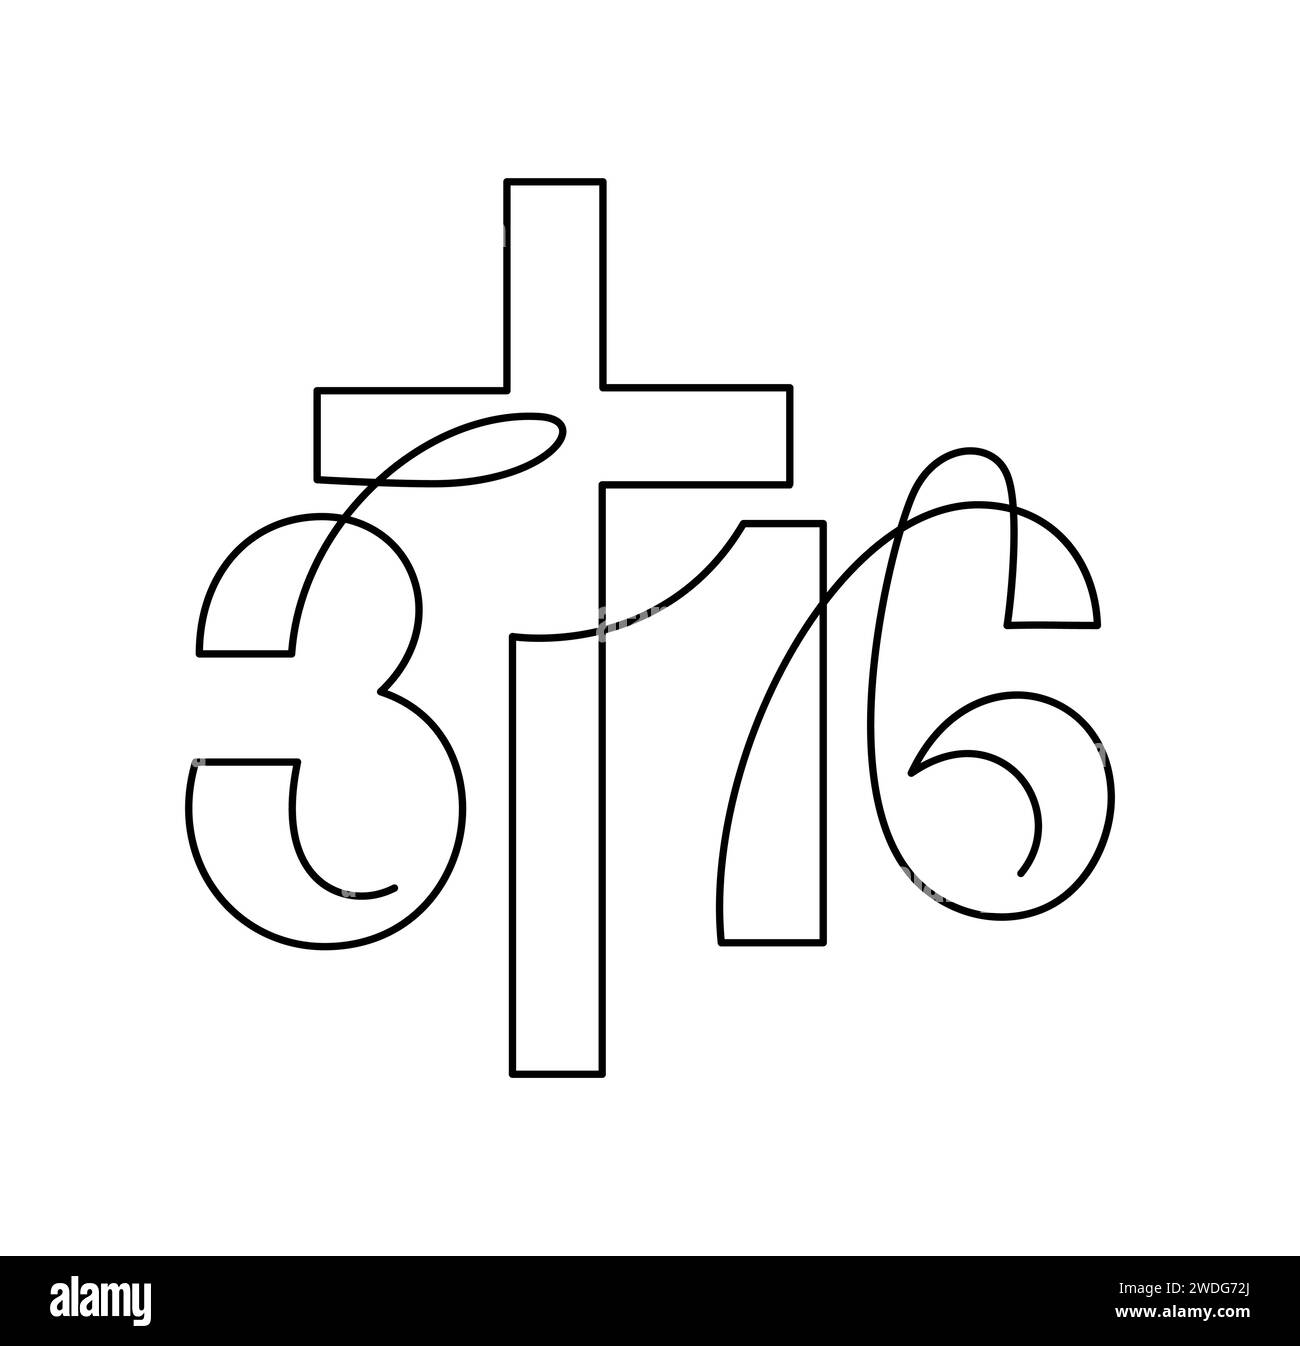 Biblische Phrase aus Johannes 3,16. Durchgehend ein Logo mit einer Kunstlinie über Gott Liebe. True Story, Typografie zum Drucken oder als Poster, Karte Stock Vektor